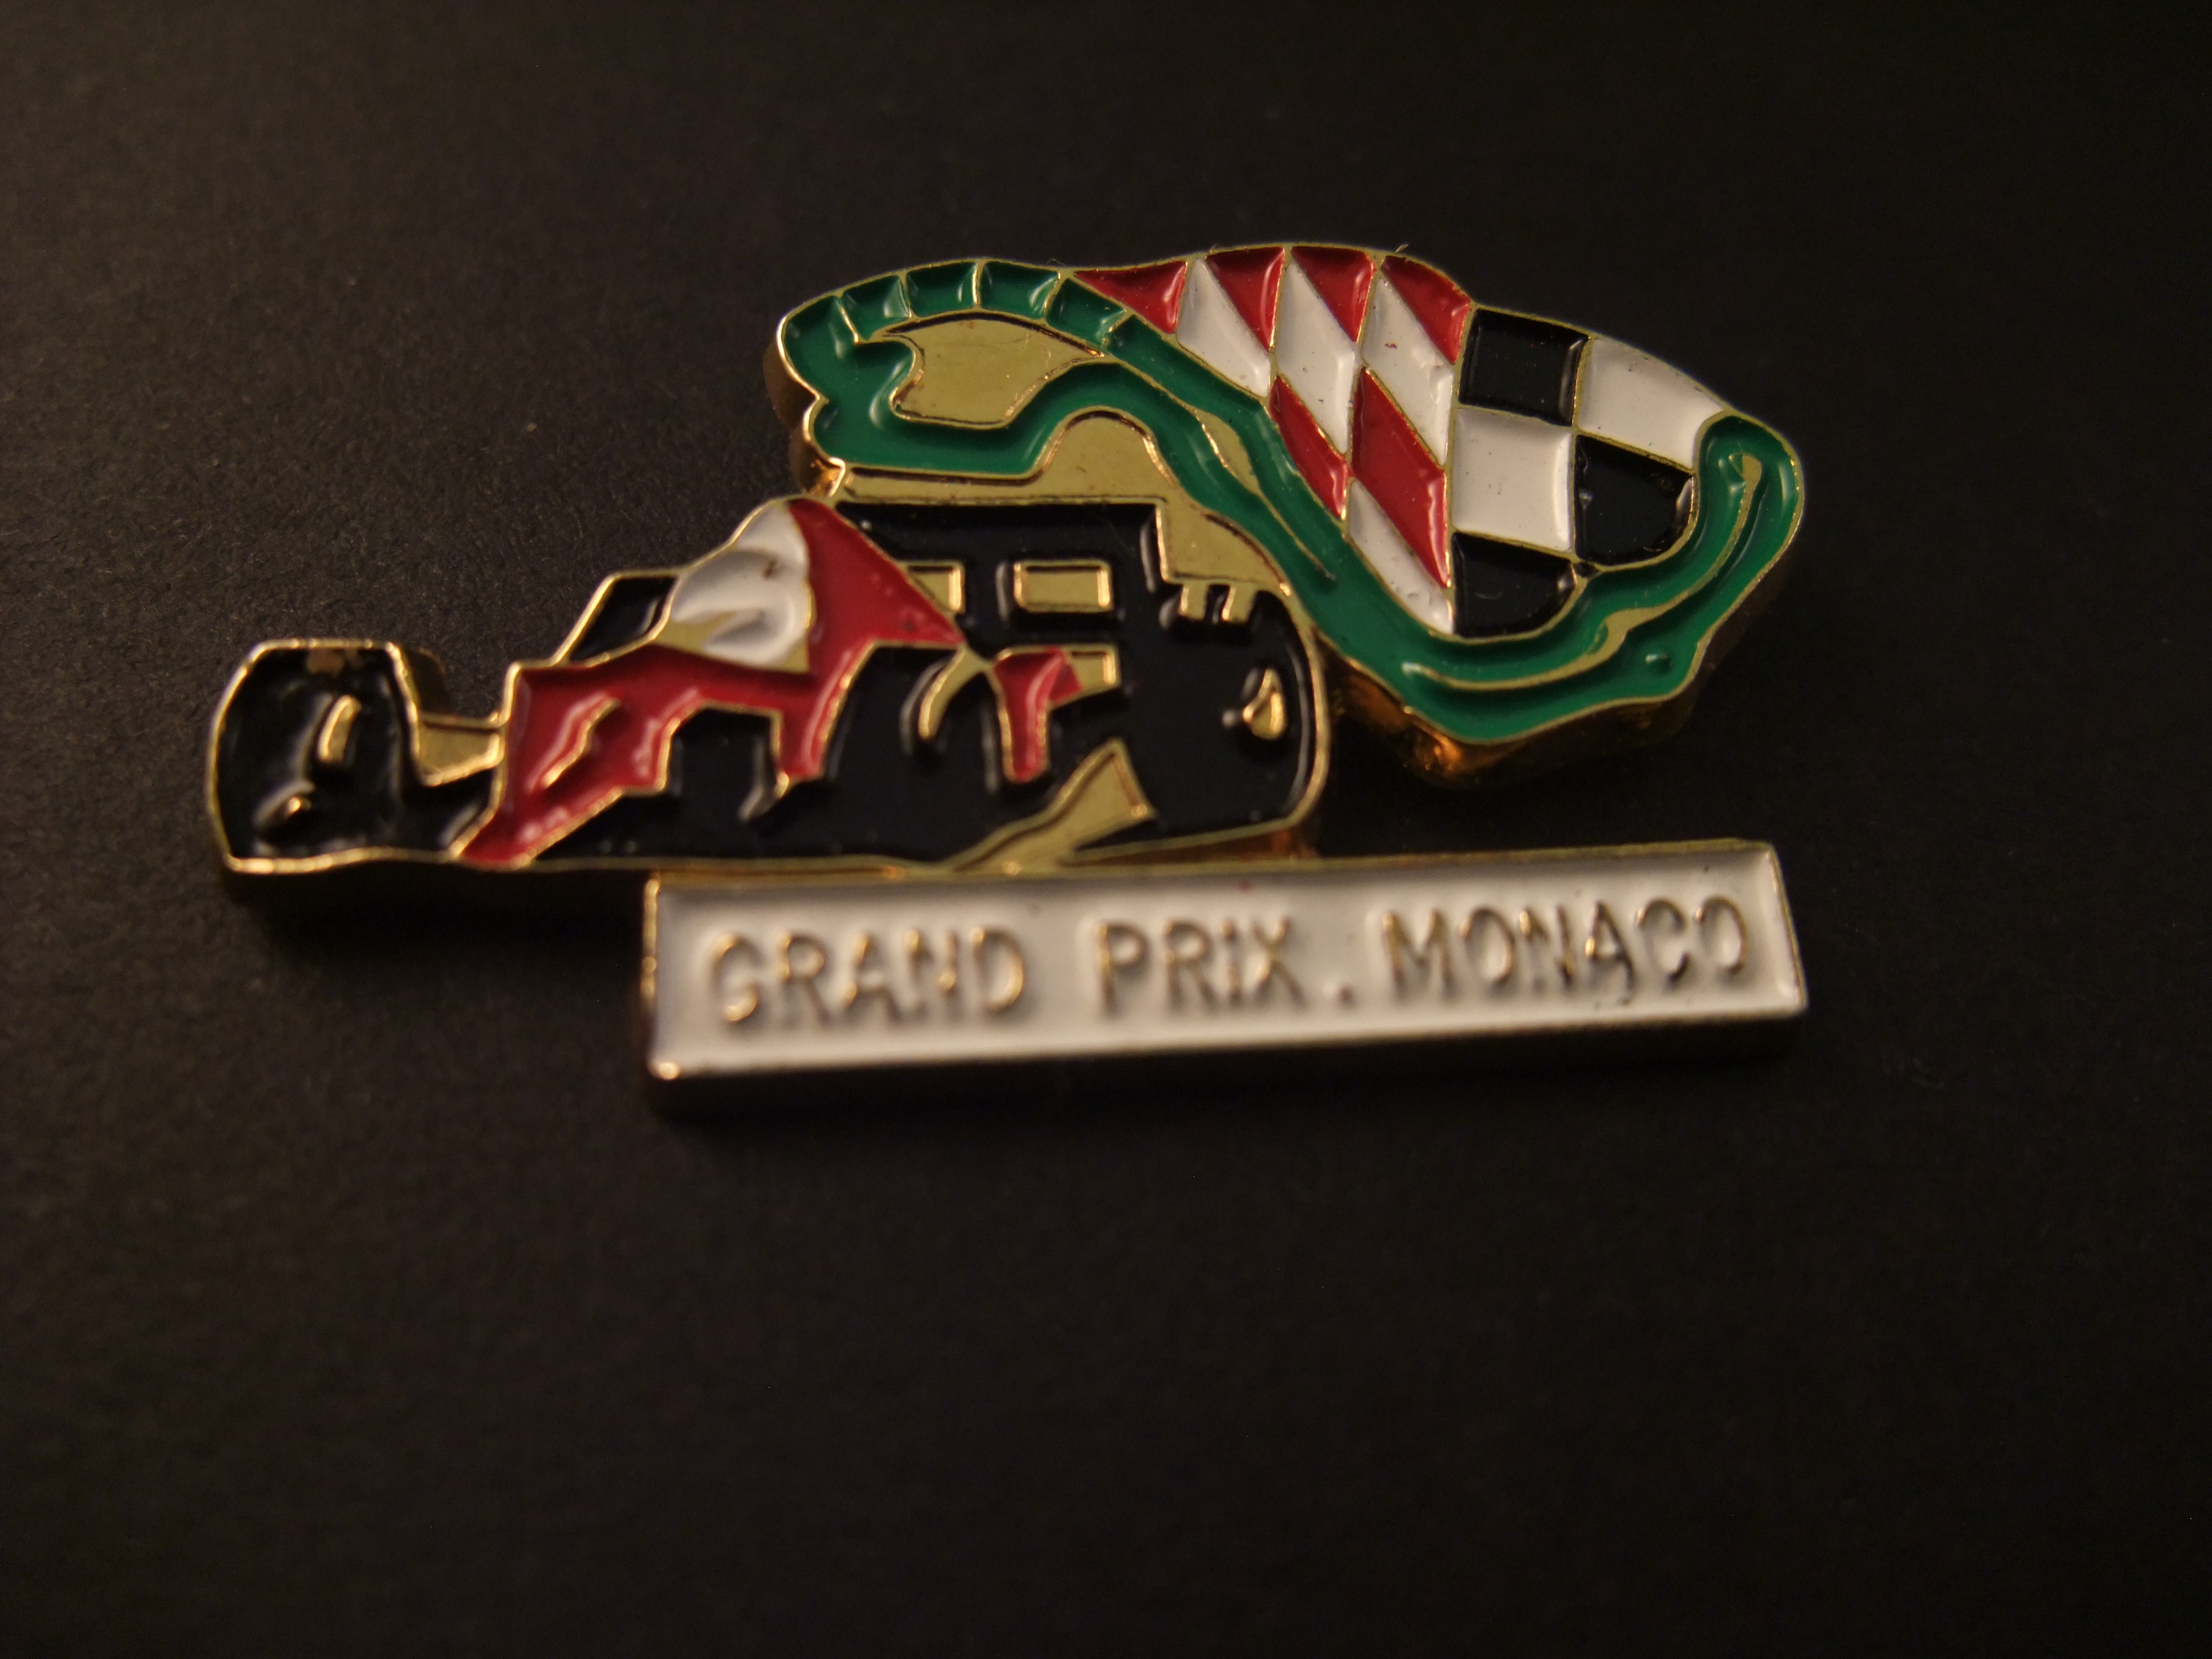 Grand Prix Monaco Formule 1(stratencircuit)